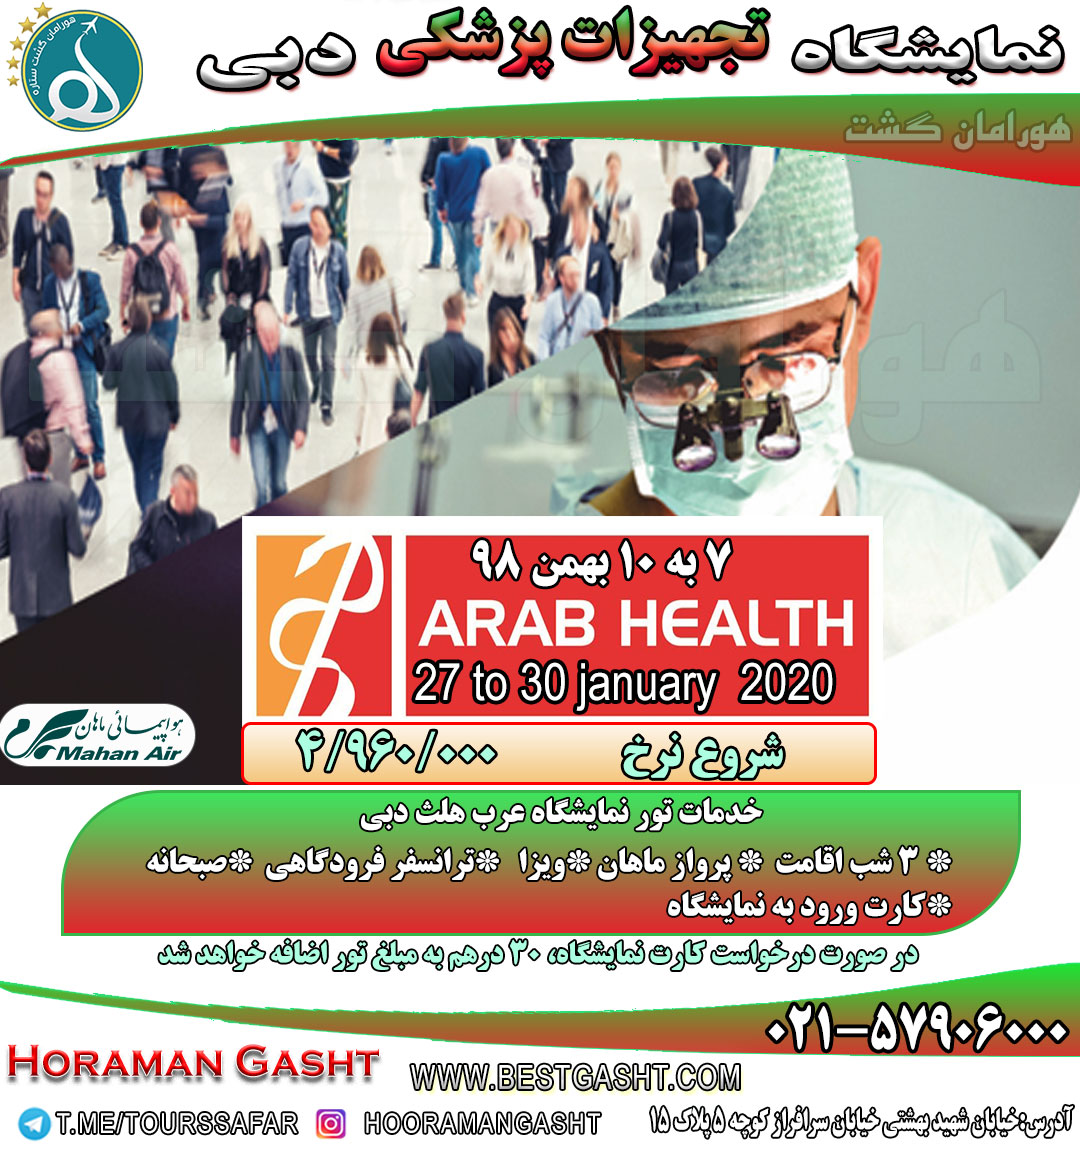 تور دبی نمایشگاه عرب هلث ( تجهیزات پزشکی )2020